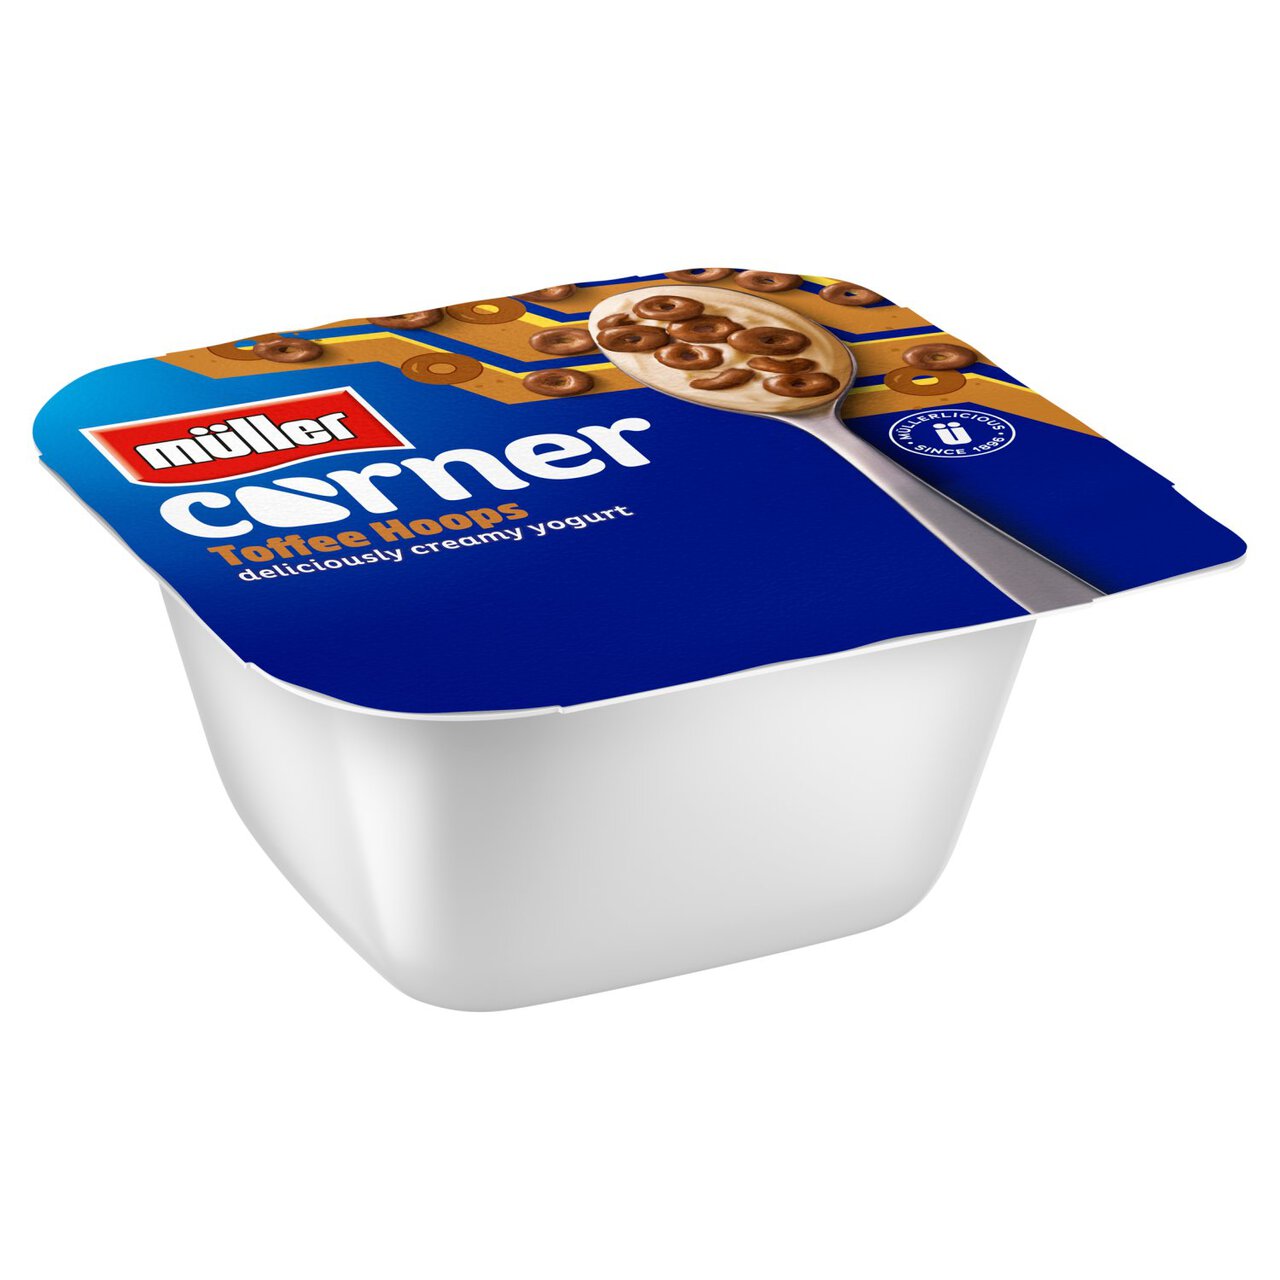 Muller Corner Toffee Yogurt with Chocolate Hoops 124g